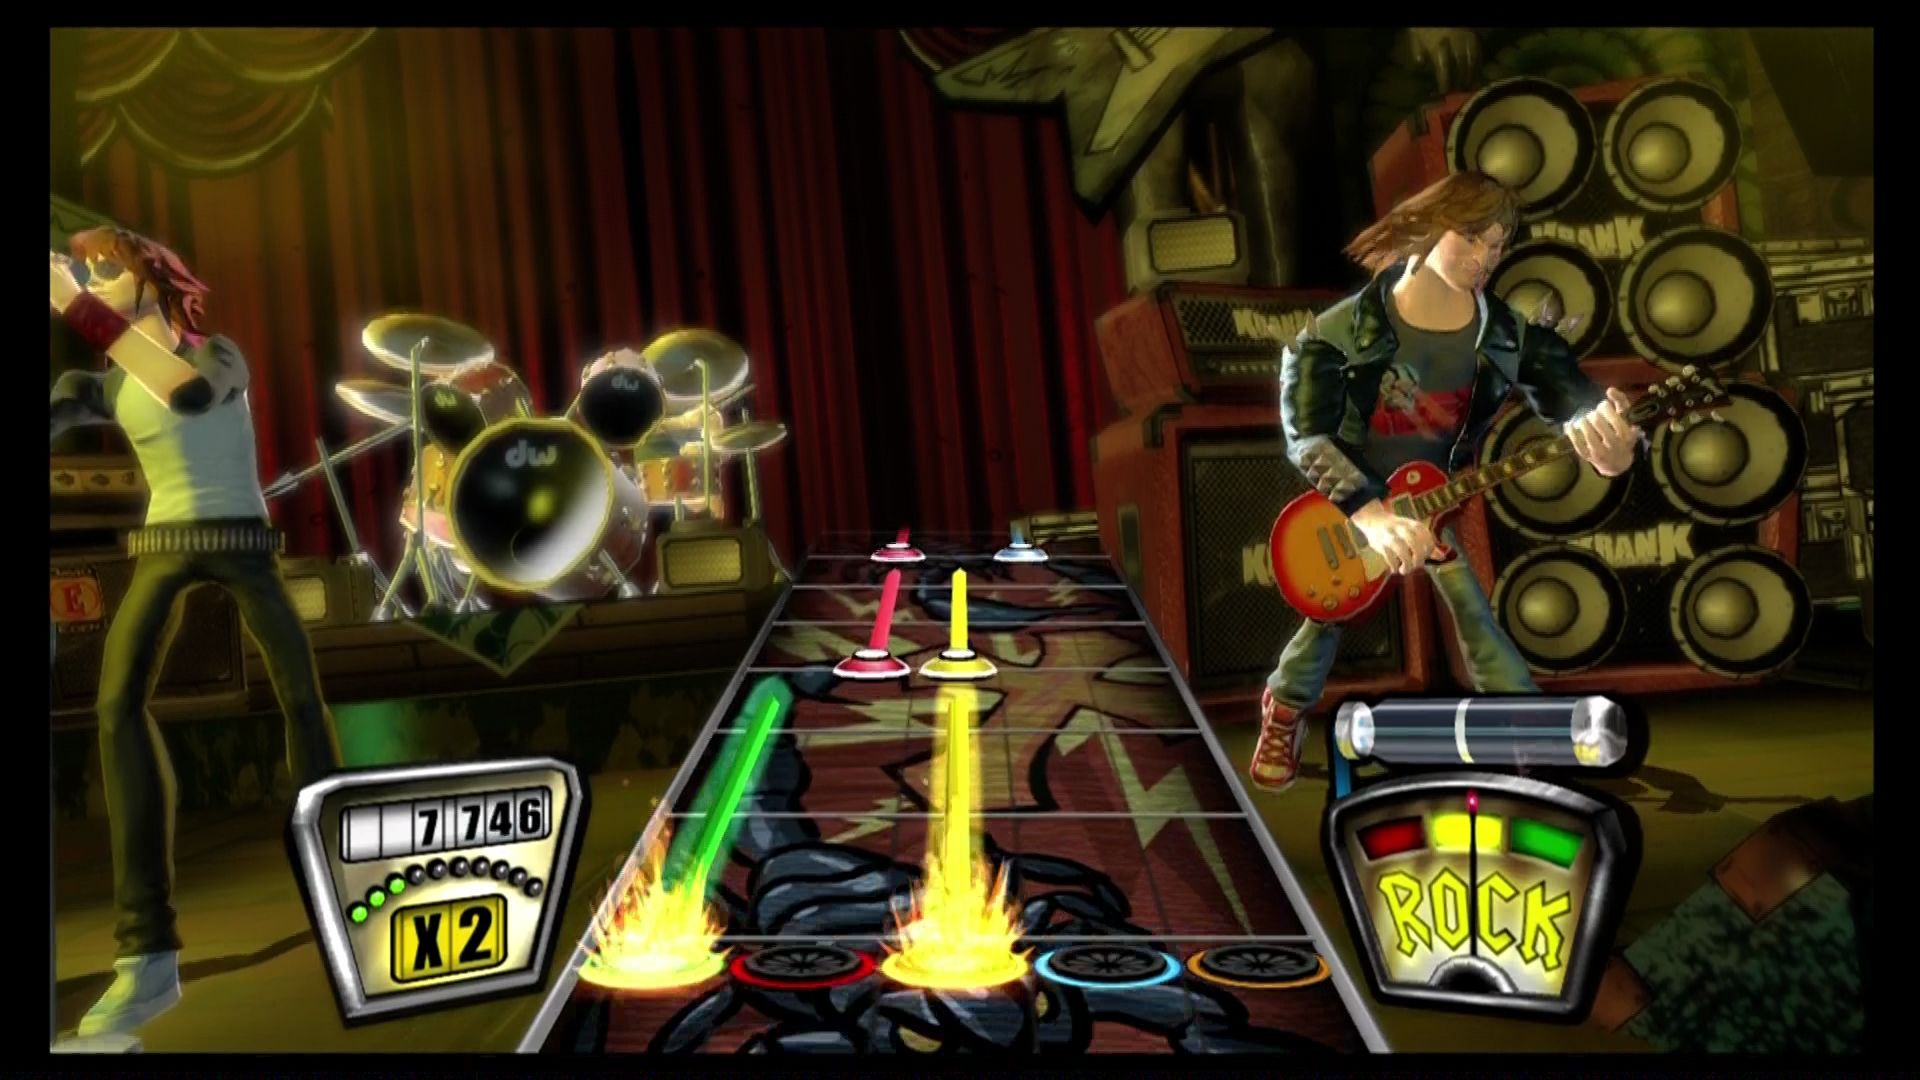 Guitar Hero II - Microsoft Xbox 360 Game